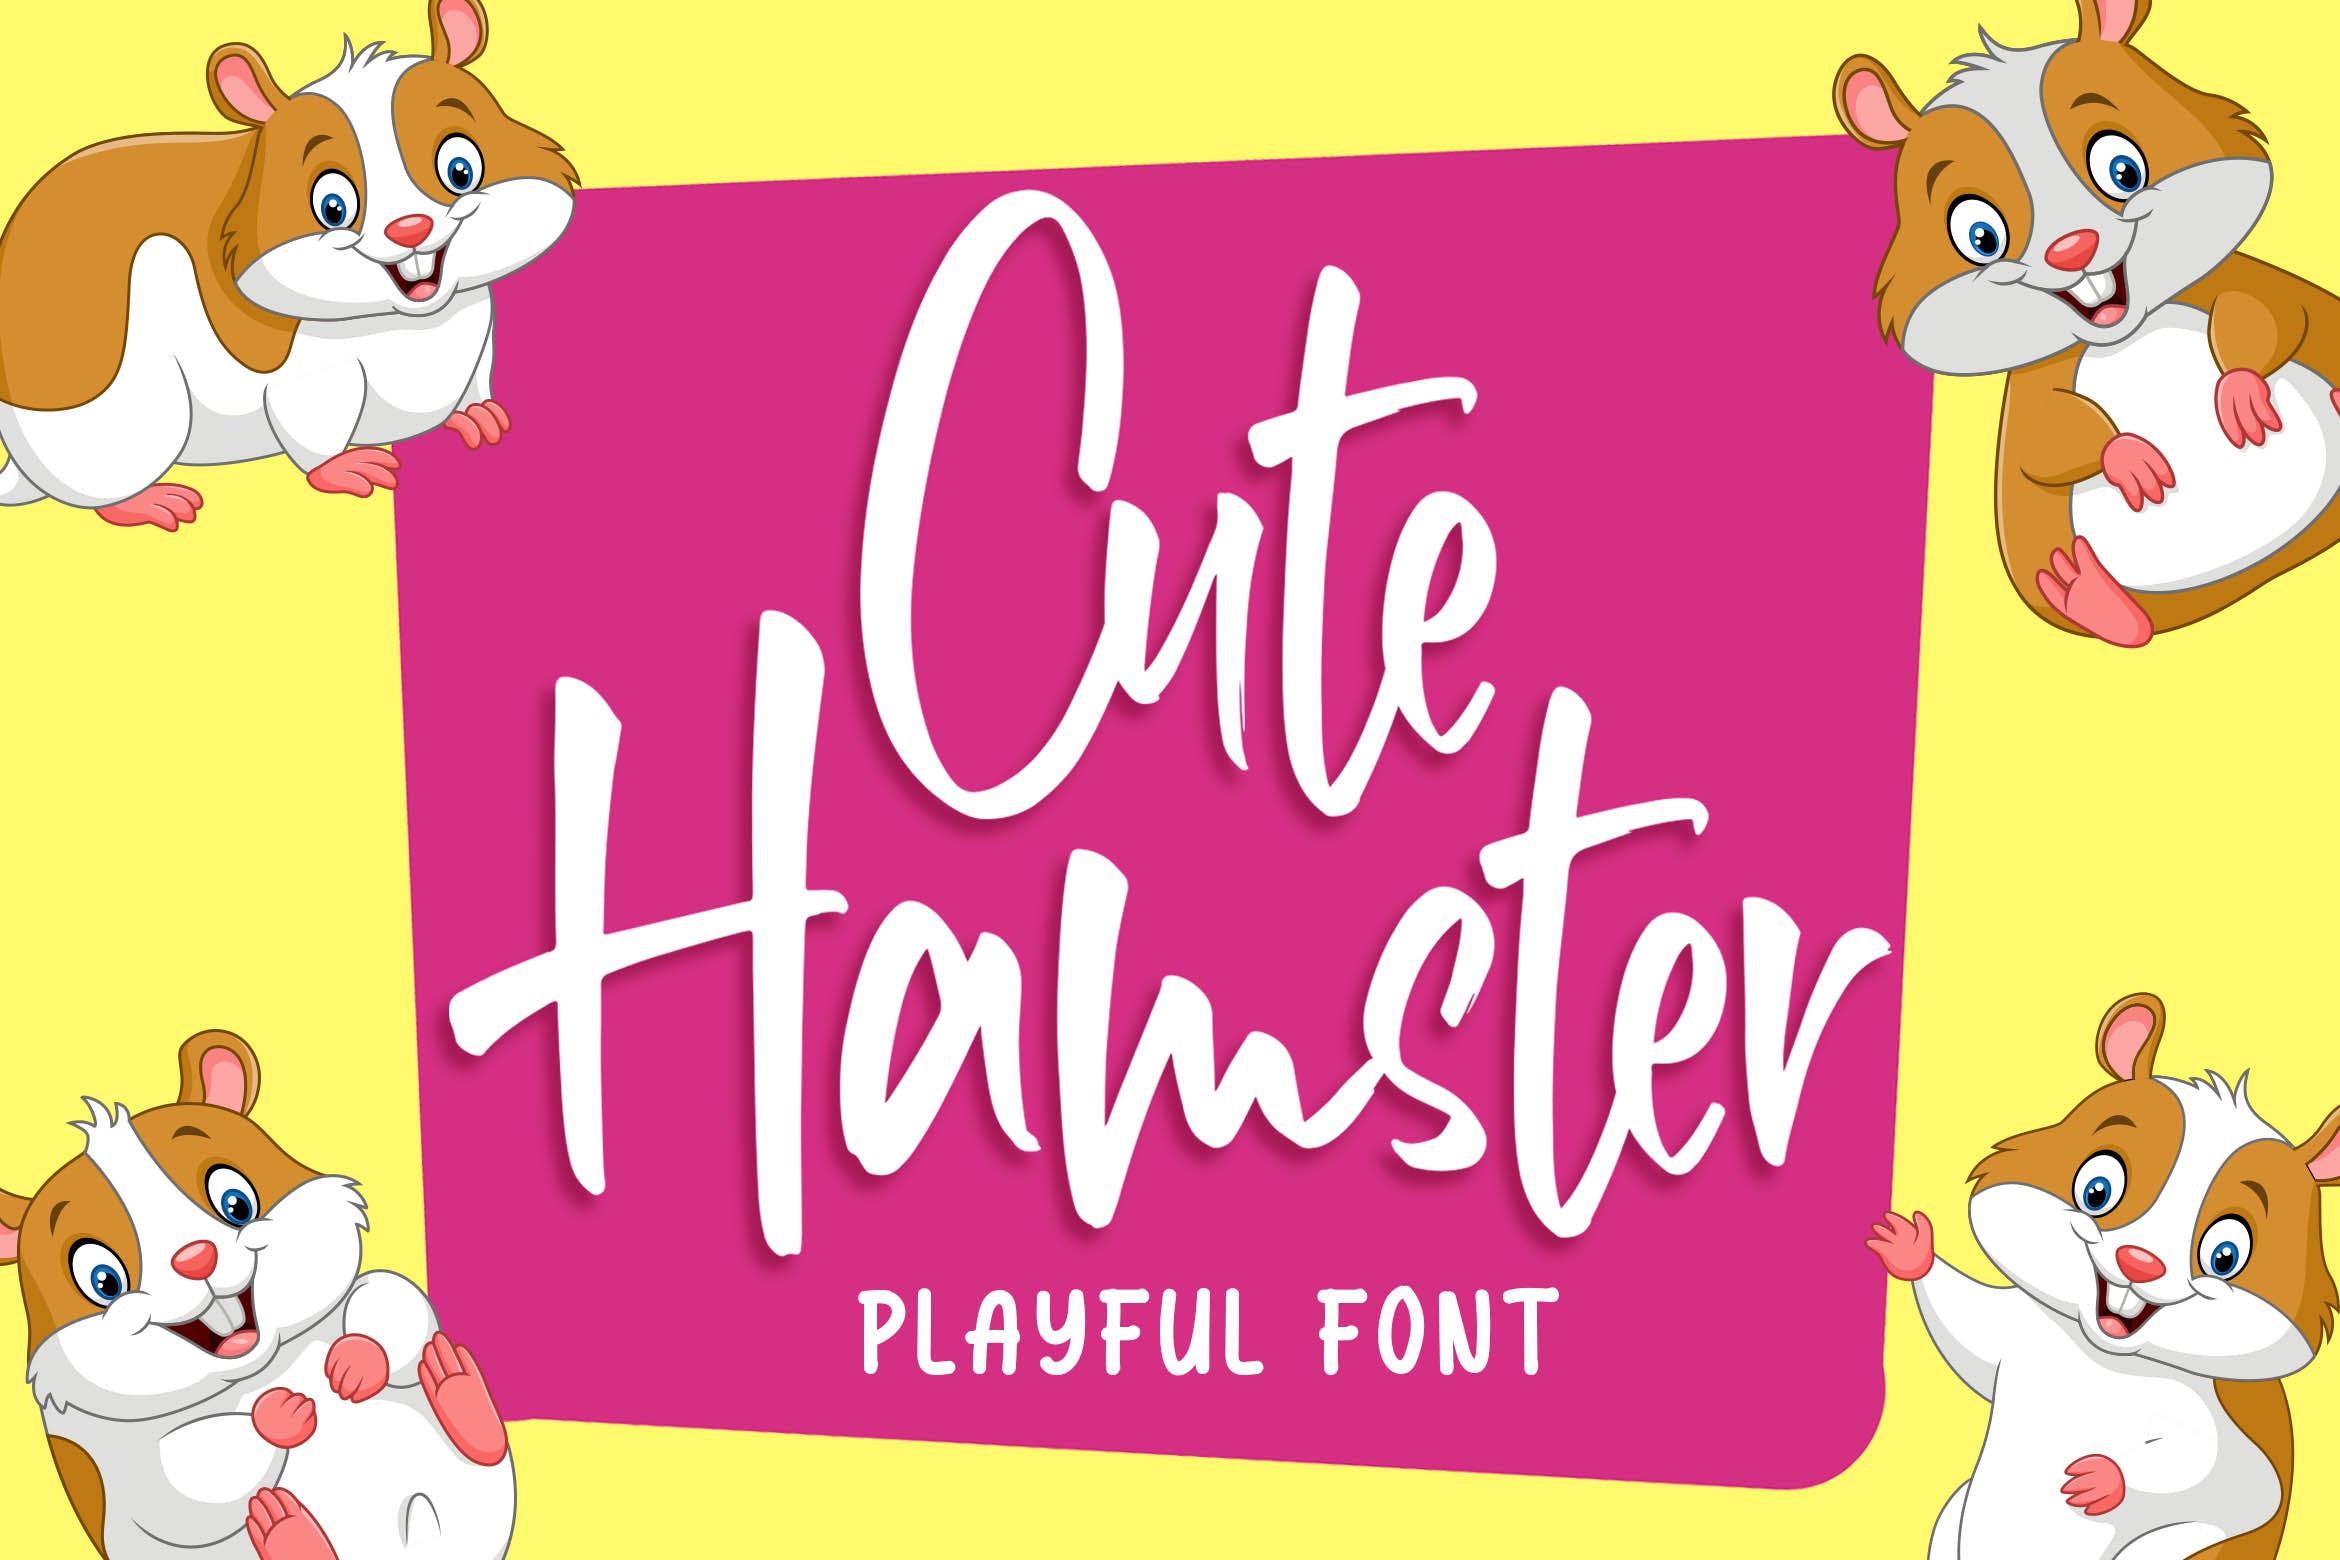 俏皮可爱风格英文手写装饰字体非凡图库精选 Cute Hamster – Playful Font插图